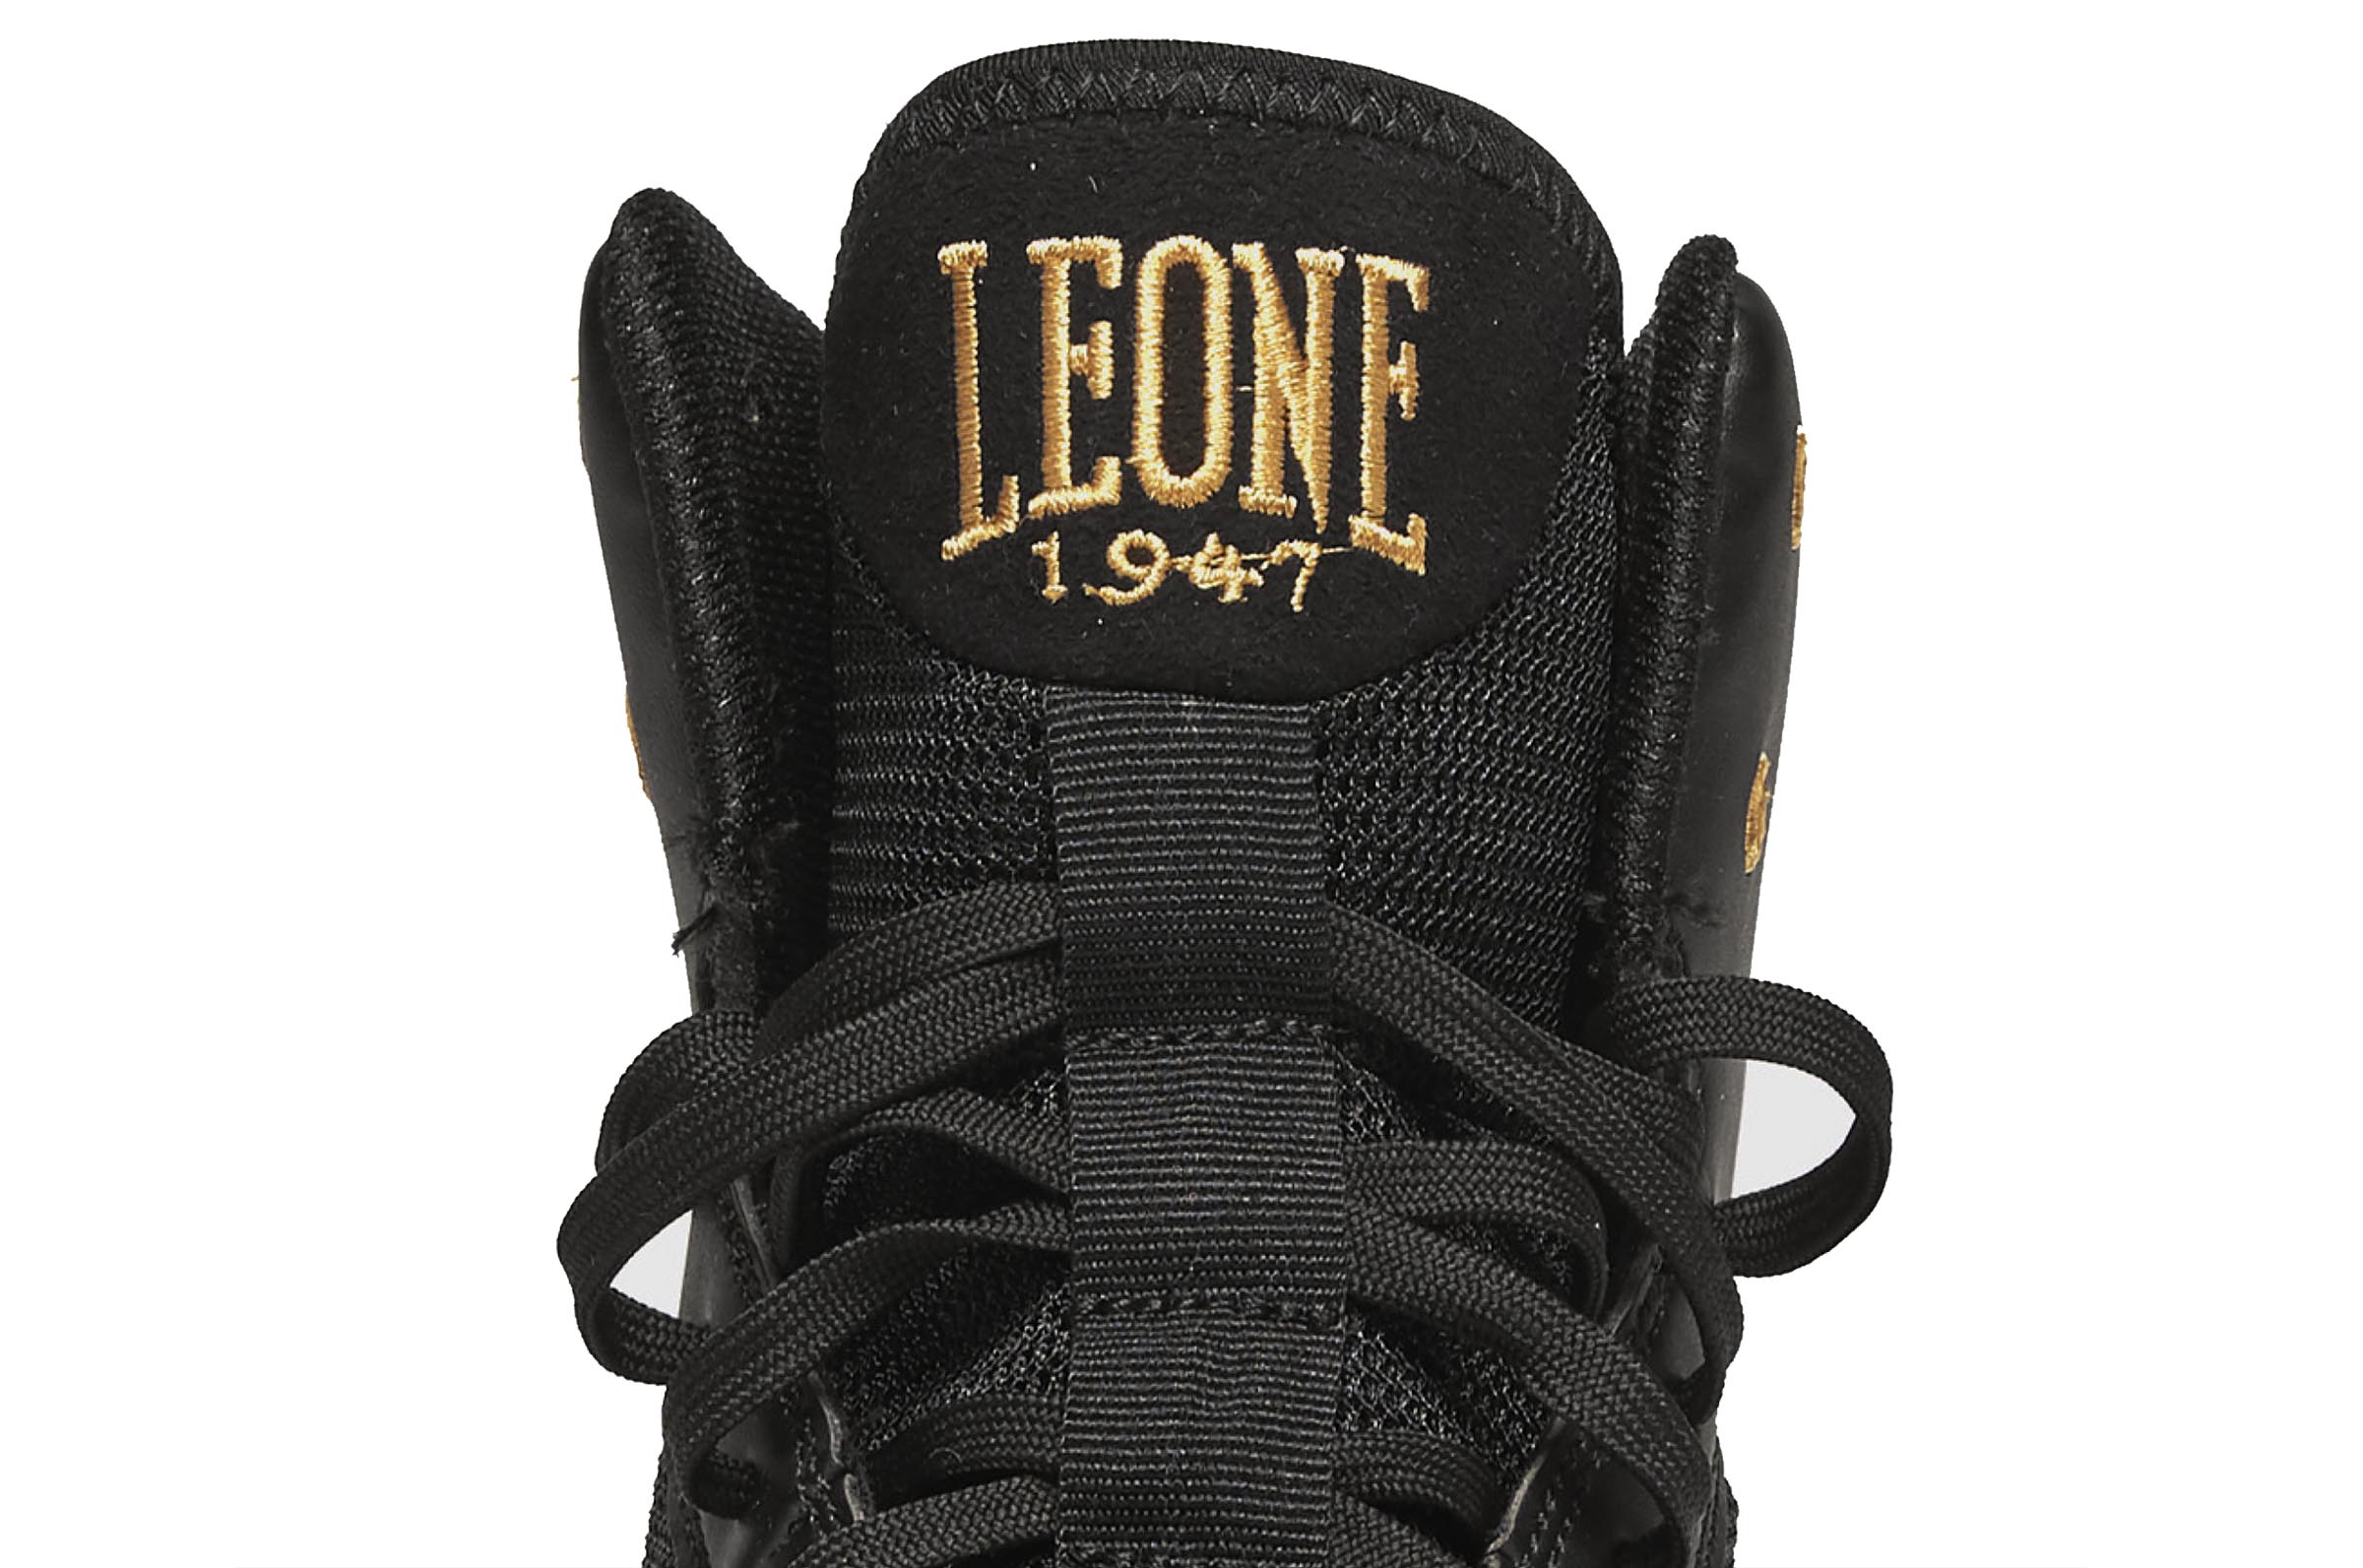 Botas de Boxeo y lucha Leone 1947  Premium CL110